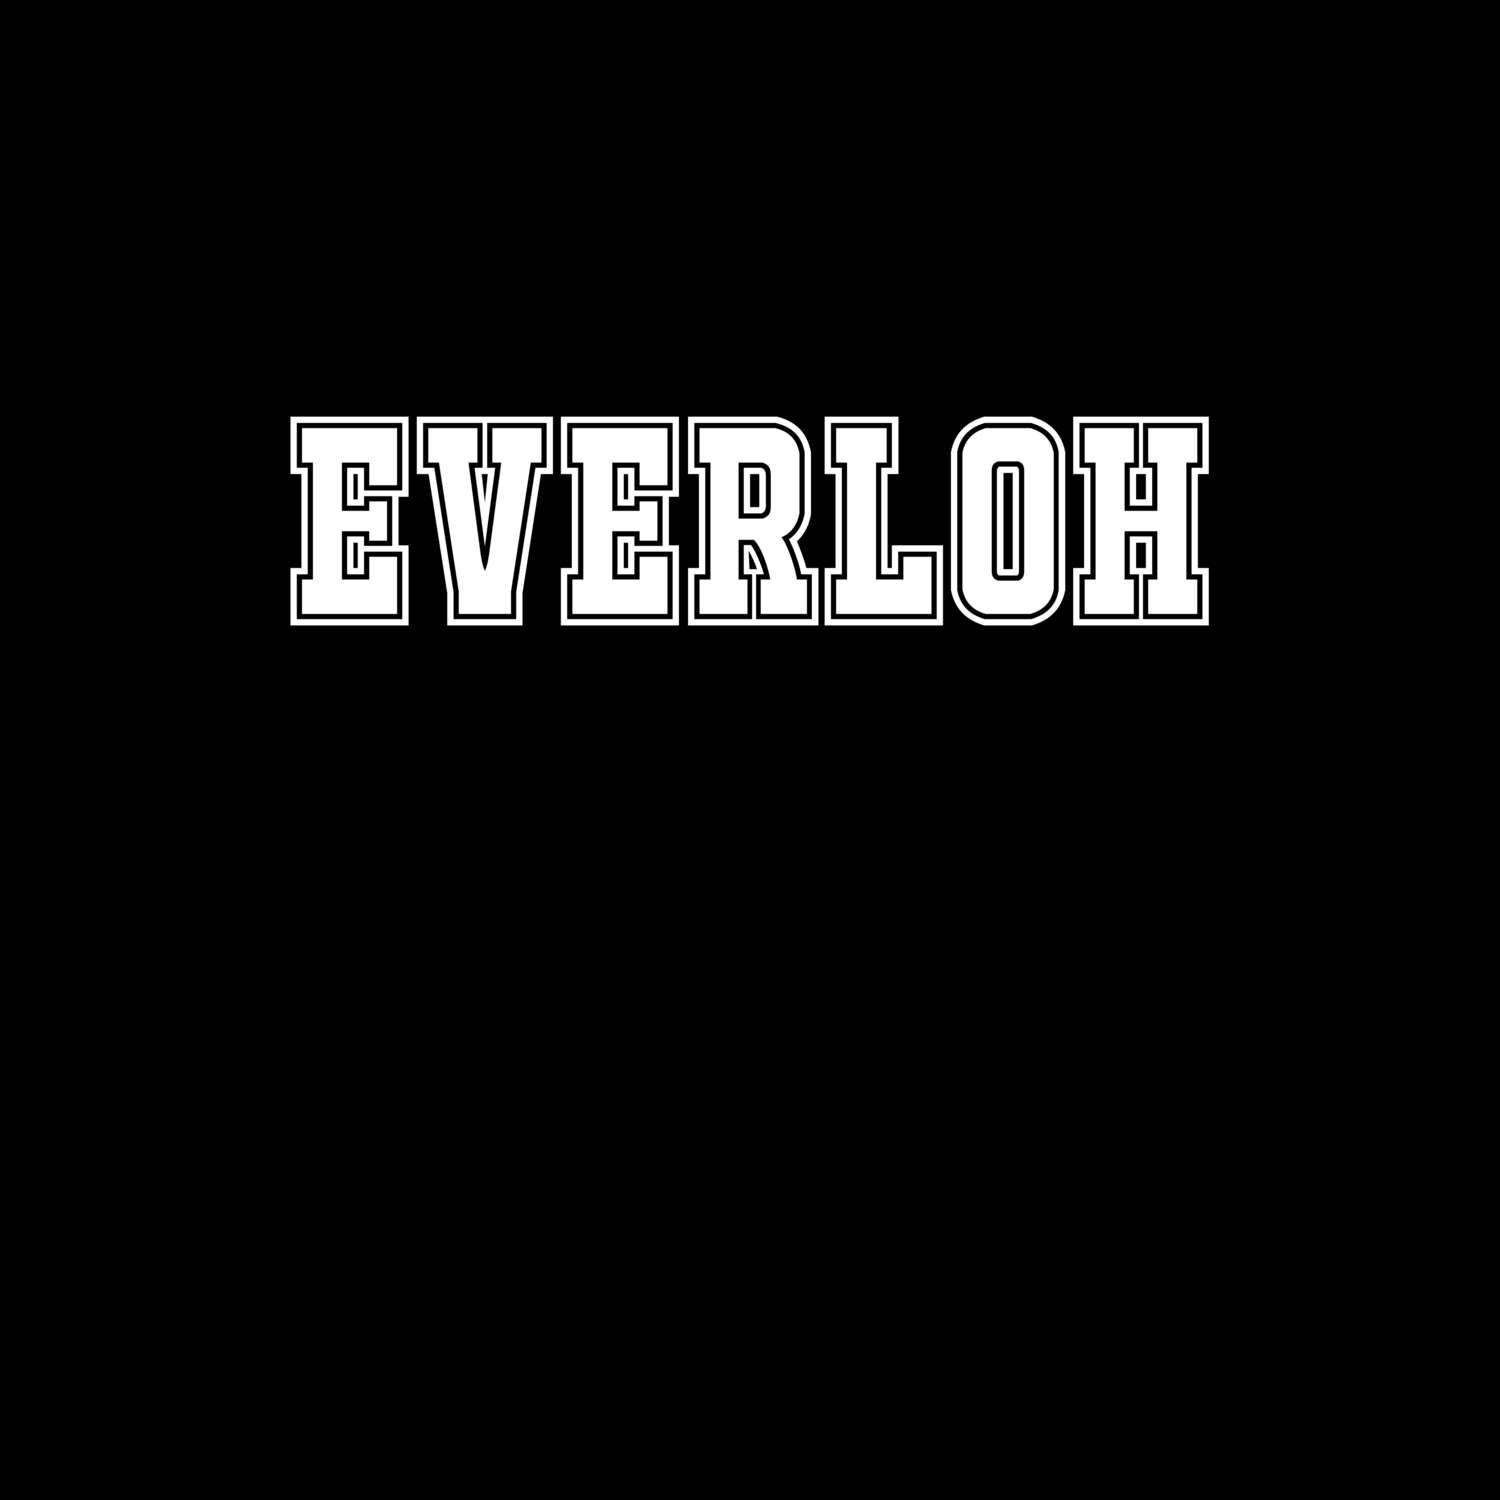 Everloh T-Shirt »Classic«